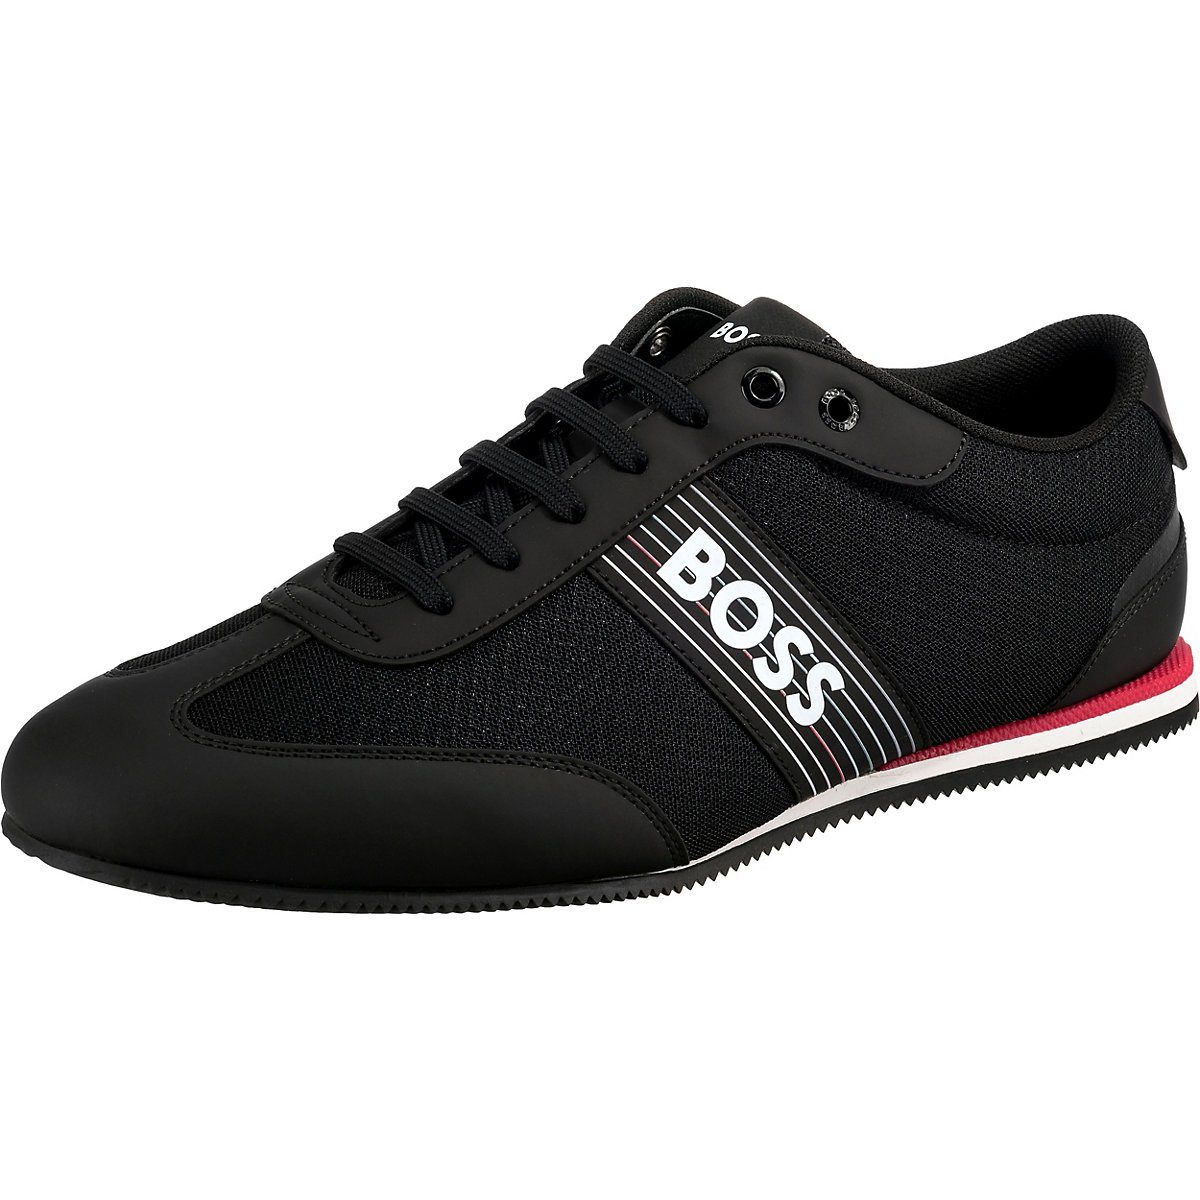 HUGO BOSS Sneaker Herren online kaufen | OTTO